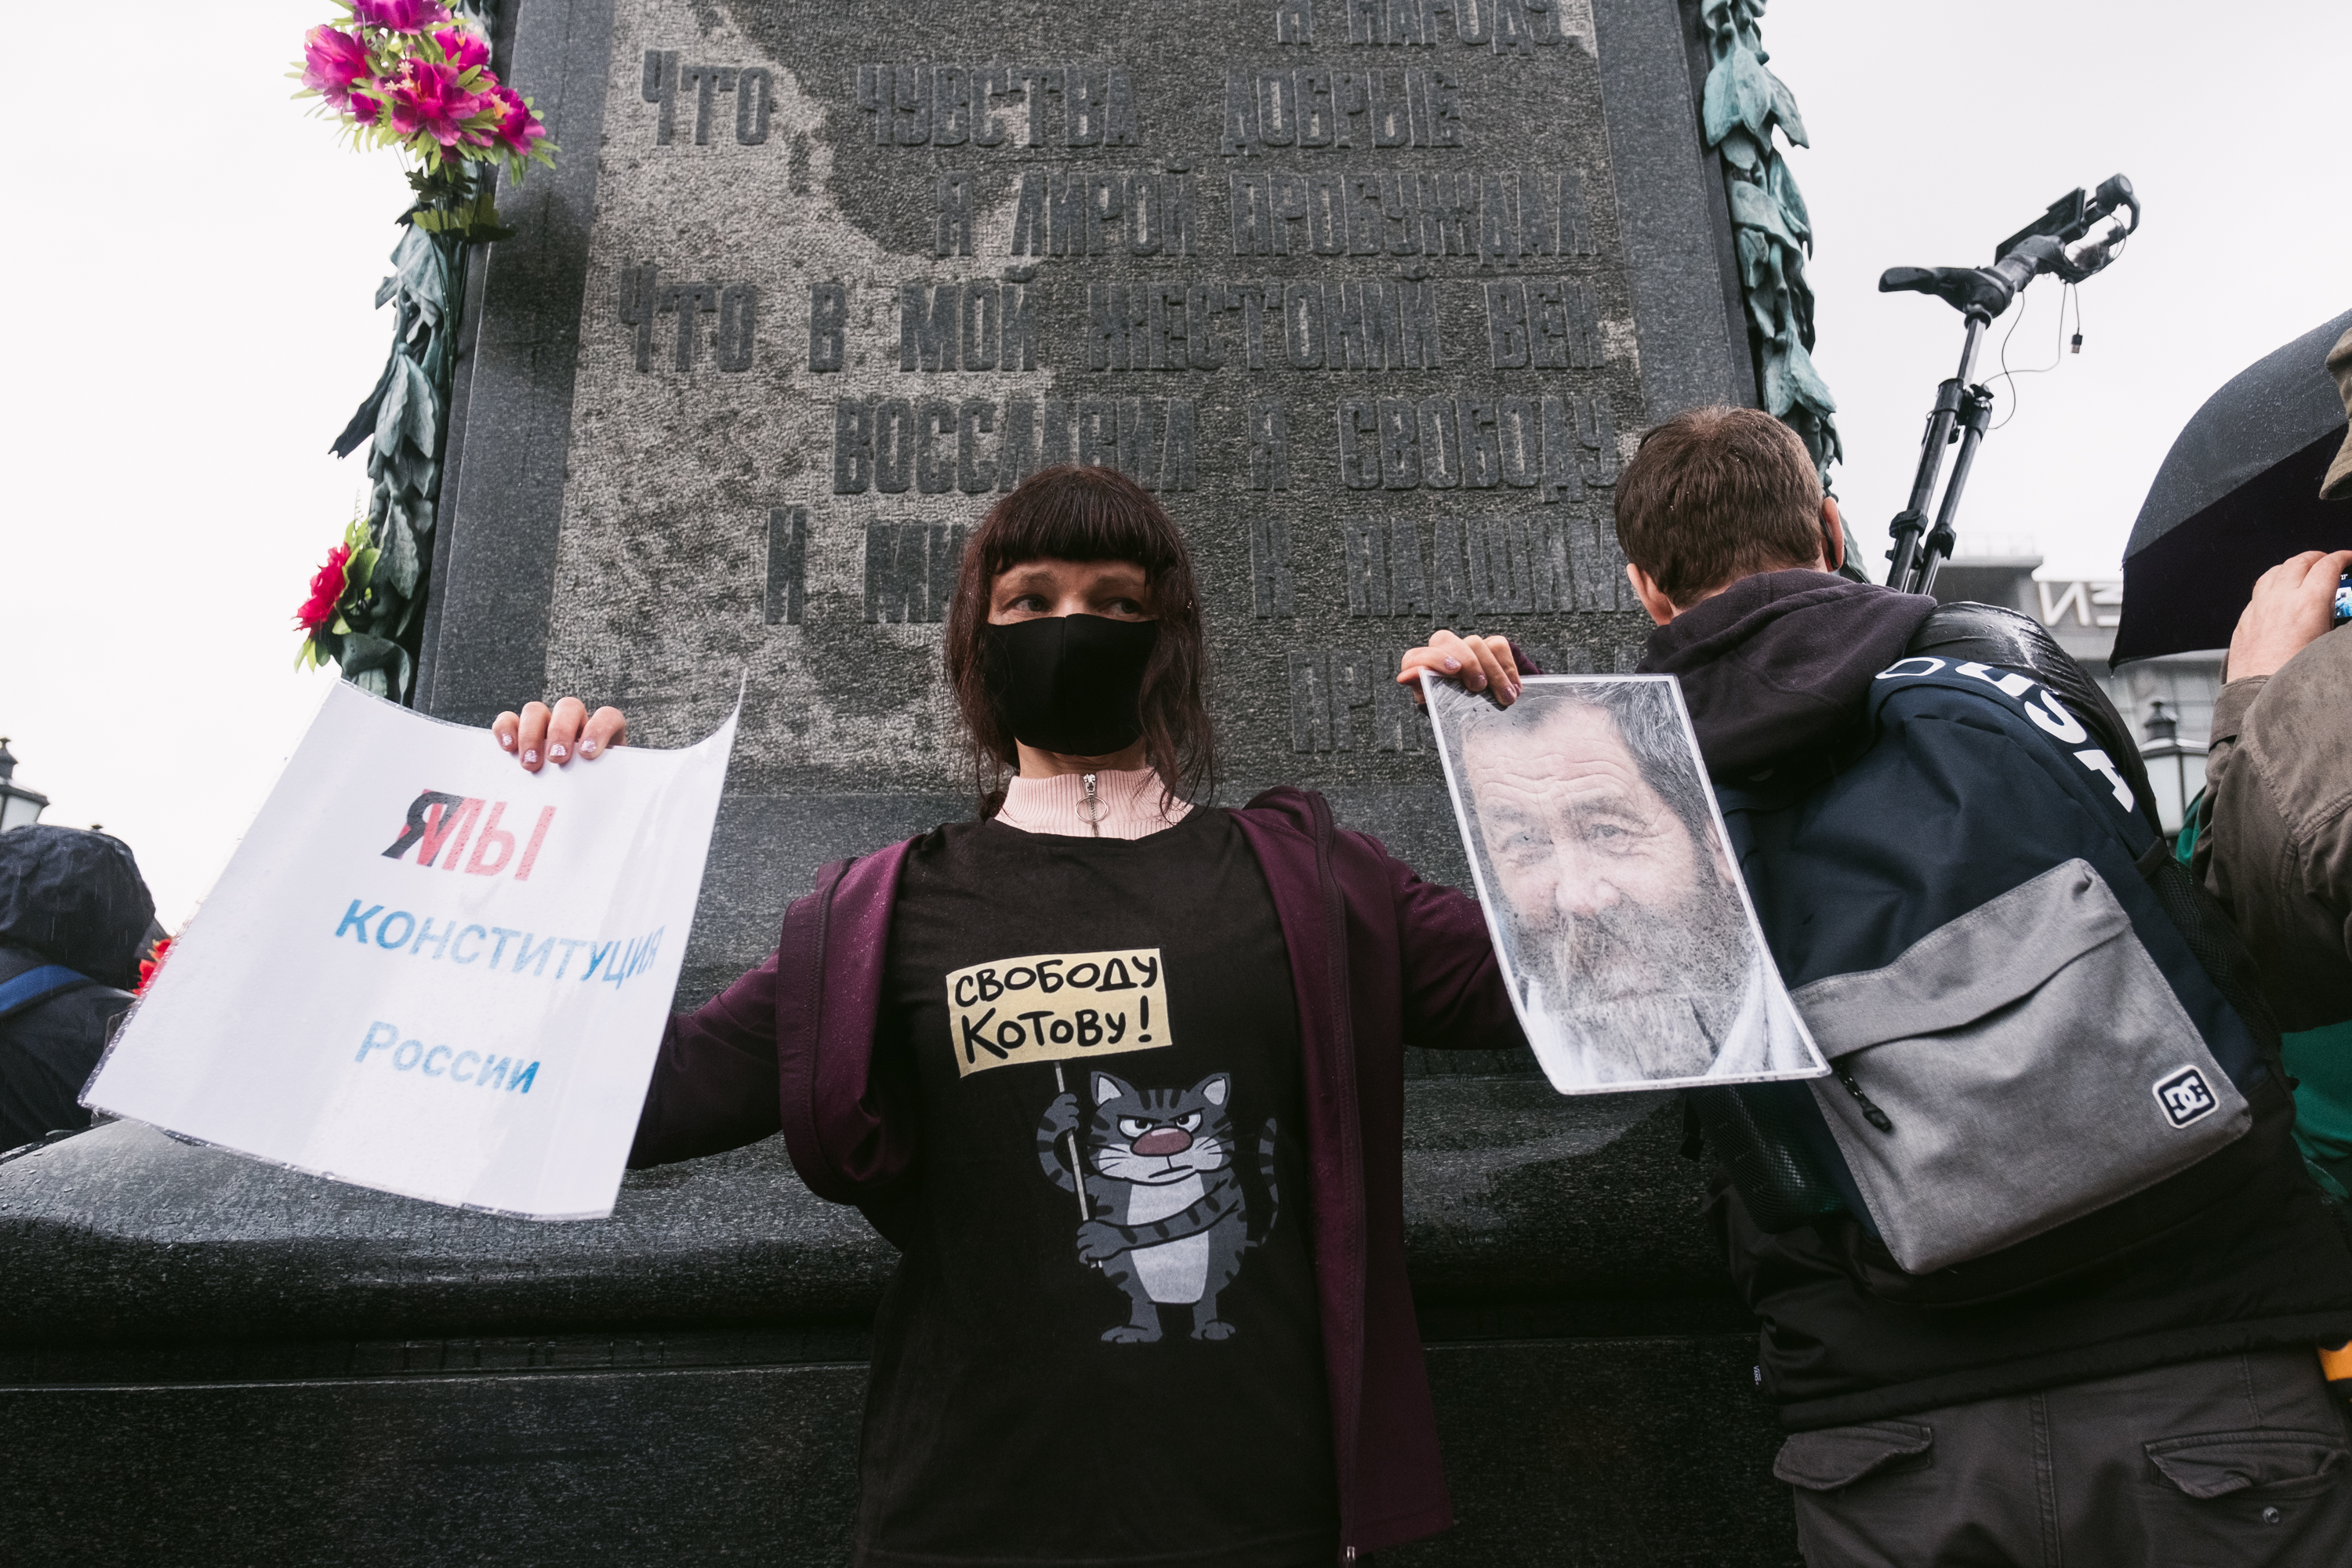 Акция против поправок в Конституцию, Москва, 15 июля 2020 года / Фото: Наталья Буданцева для ОВД-Инфо